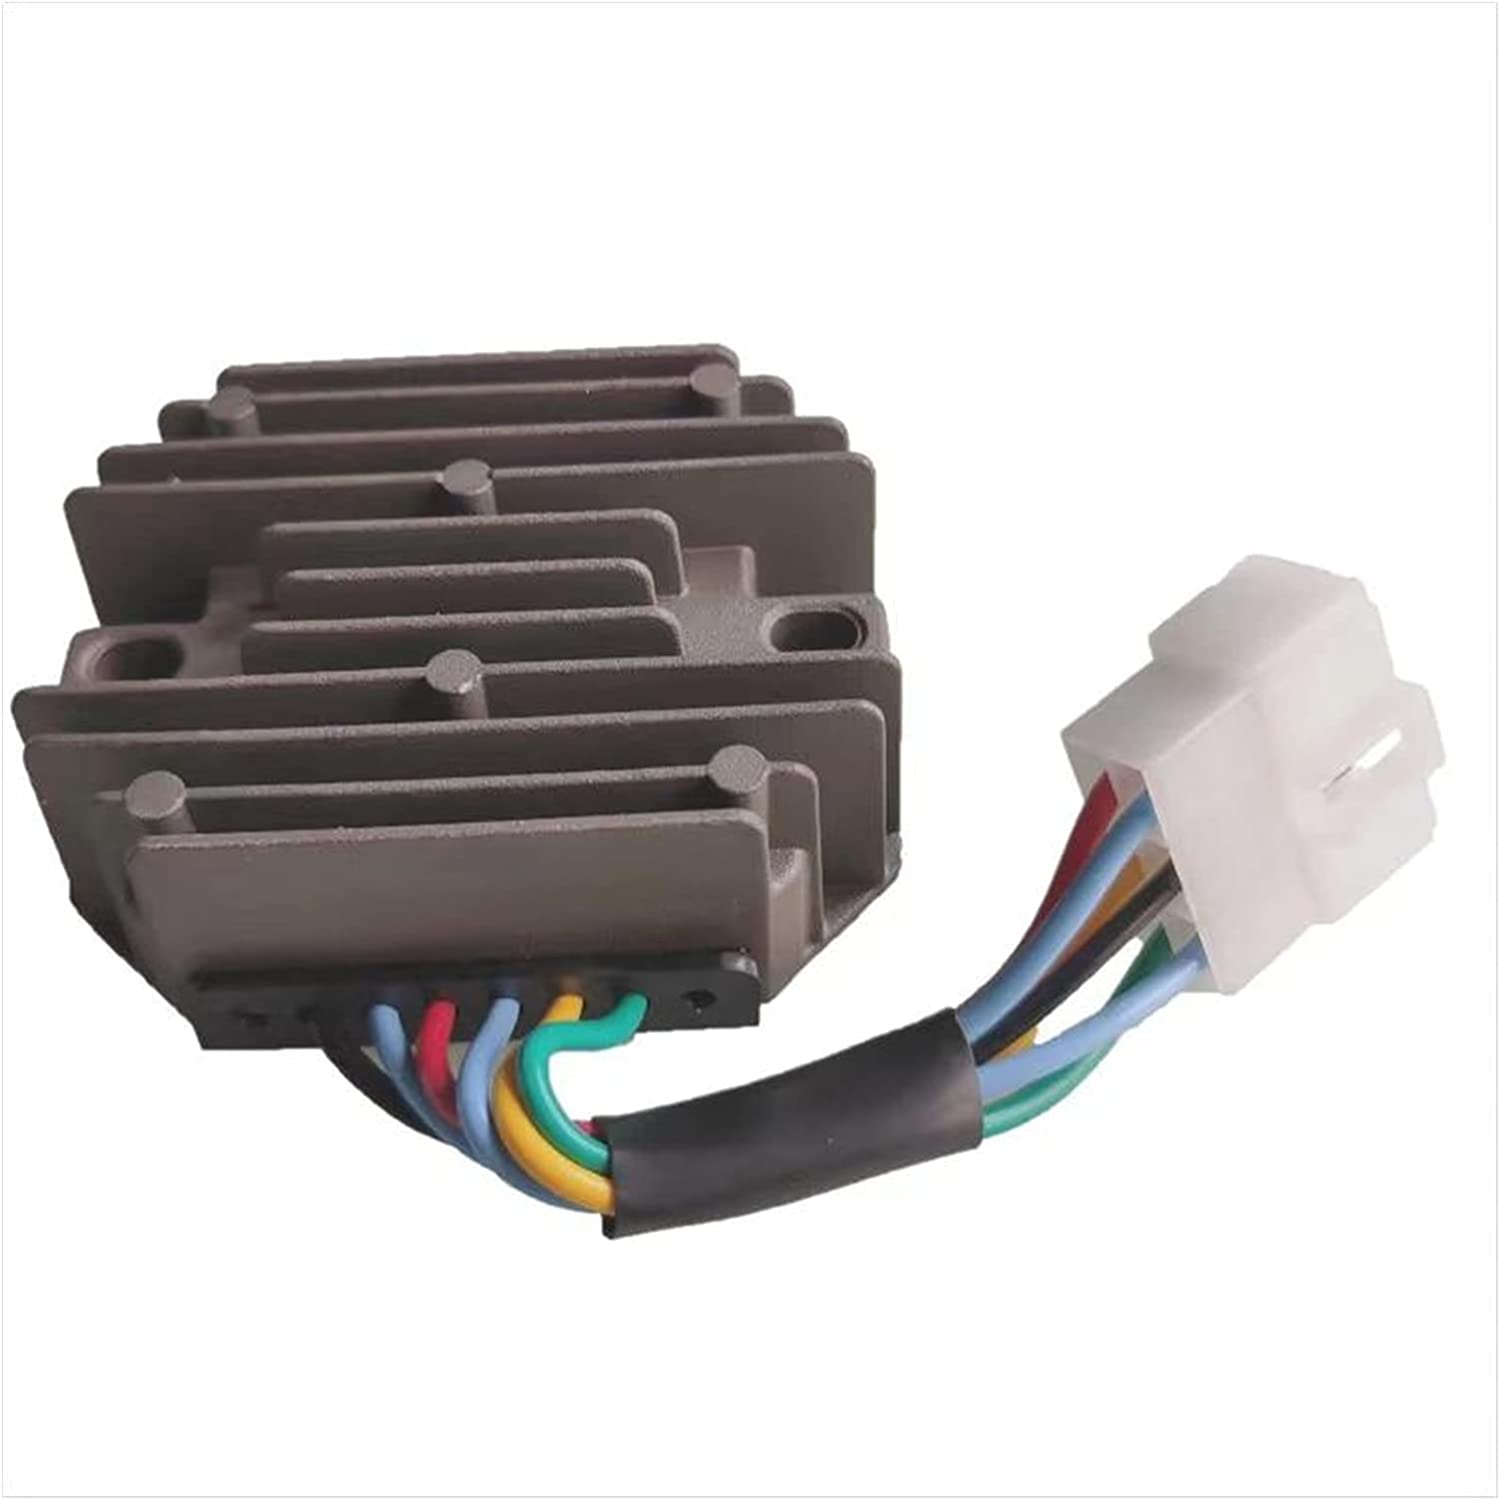 For Kubota Wheel Loader R310 R420 R520 R530 R630 12V Voltage Rectifier Regulator 6 Wire 15531-64601